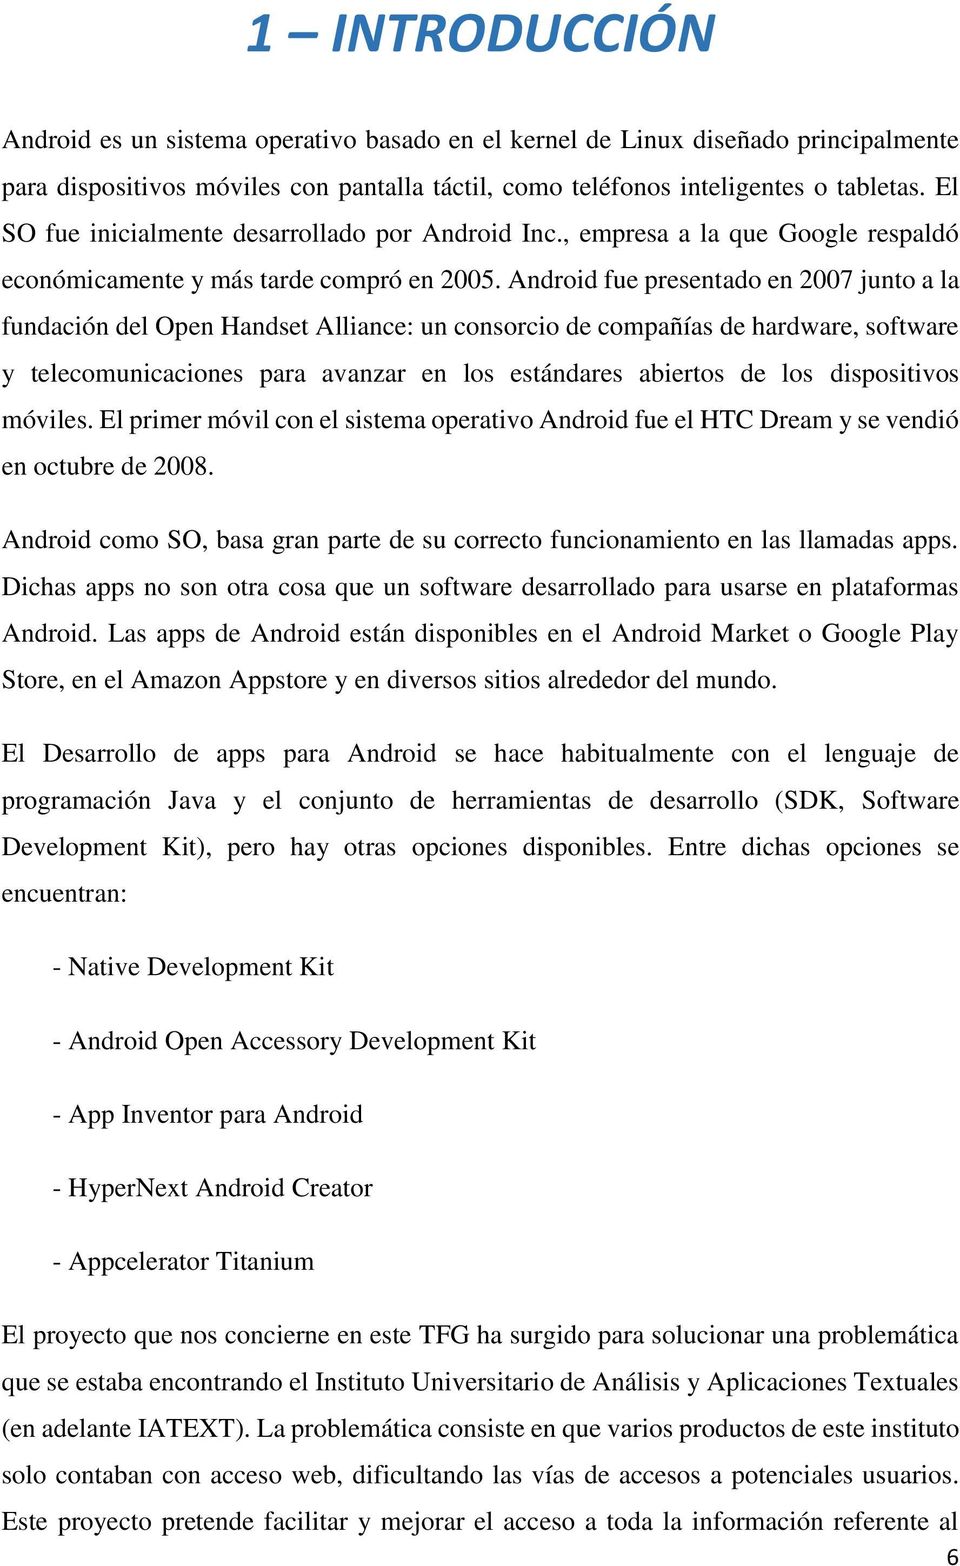 Android fue presentado en 2007 junto a la fundación del Open Handset Alliance: un consorcio de compañías de hardware, software y telecomunicaciones para avanzar en los estándares abiertos de los